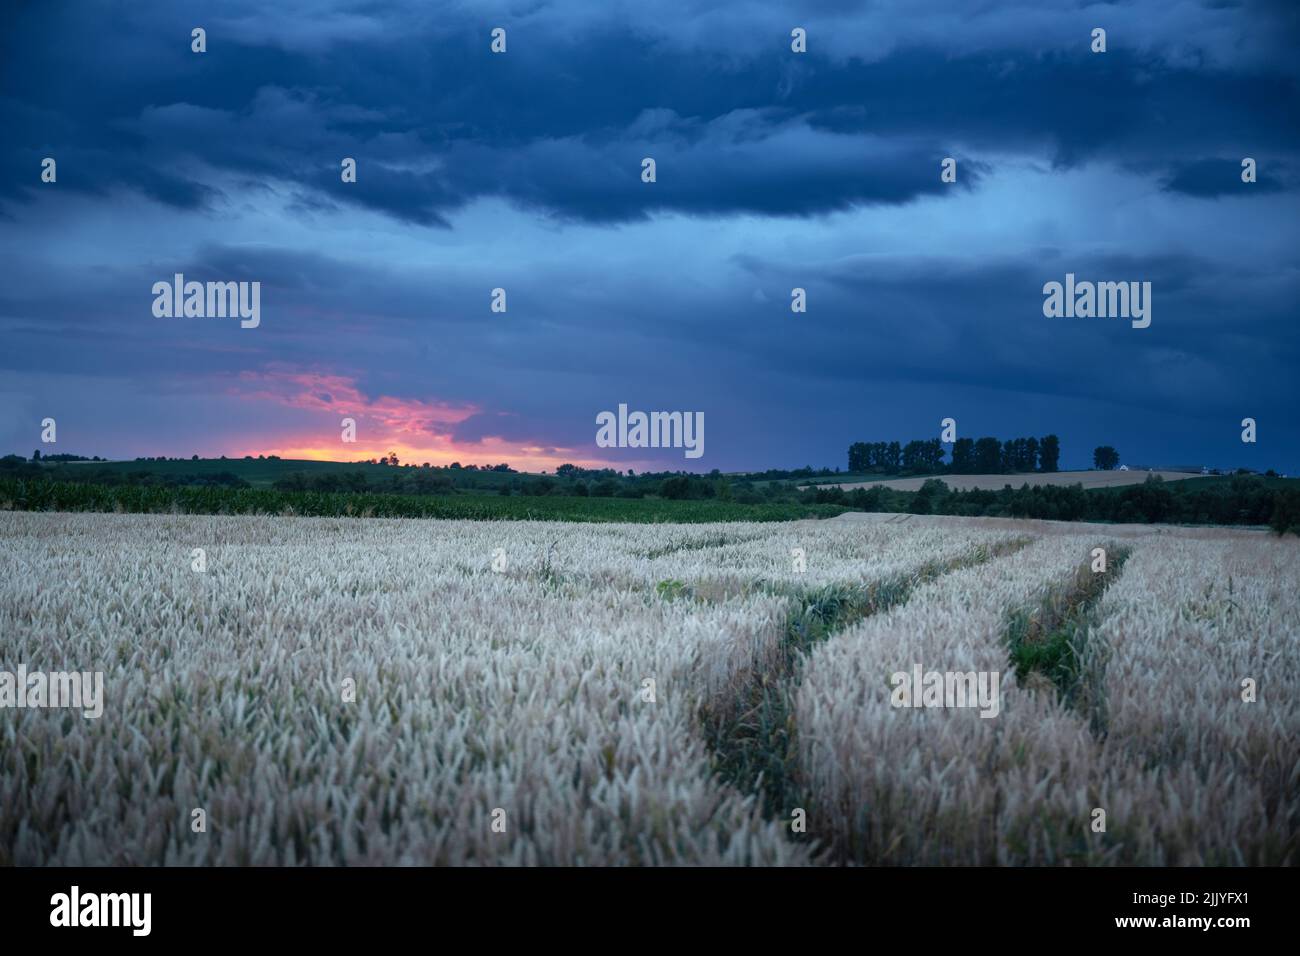 Espigas de trigo maduras en el campo rural frente al cielo nocturno oscuro con nubes lluviosas. Paisaje industrial y natural. Ucrania, Europa Foto de stock